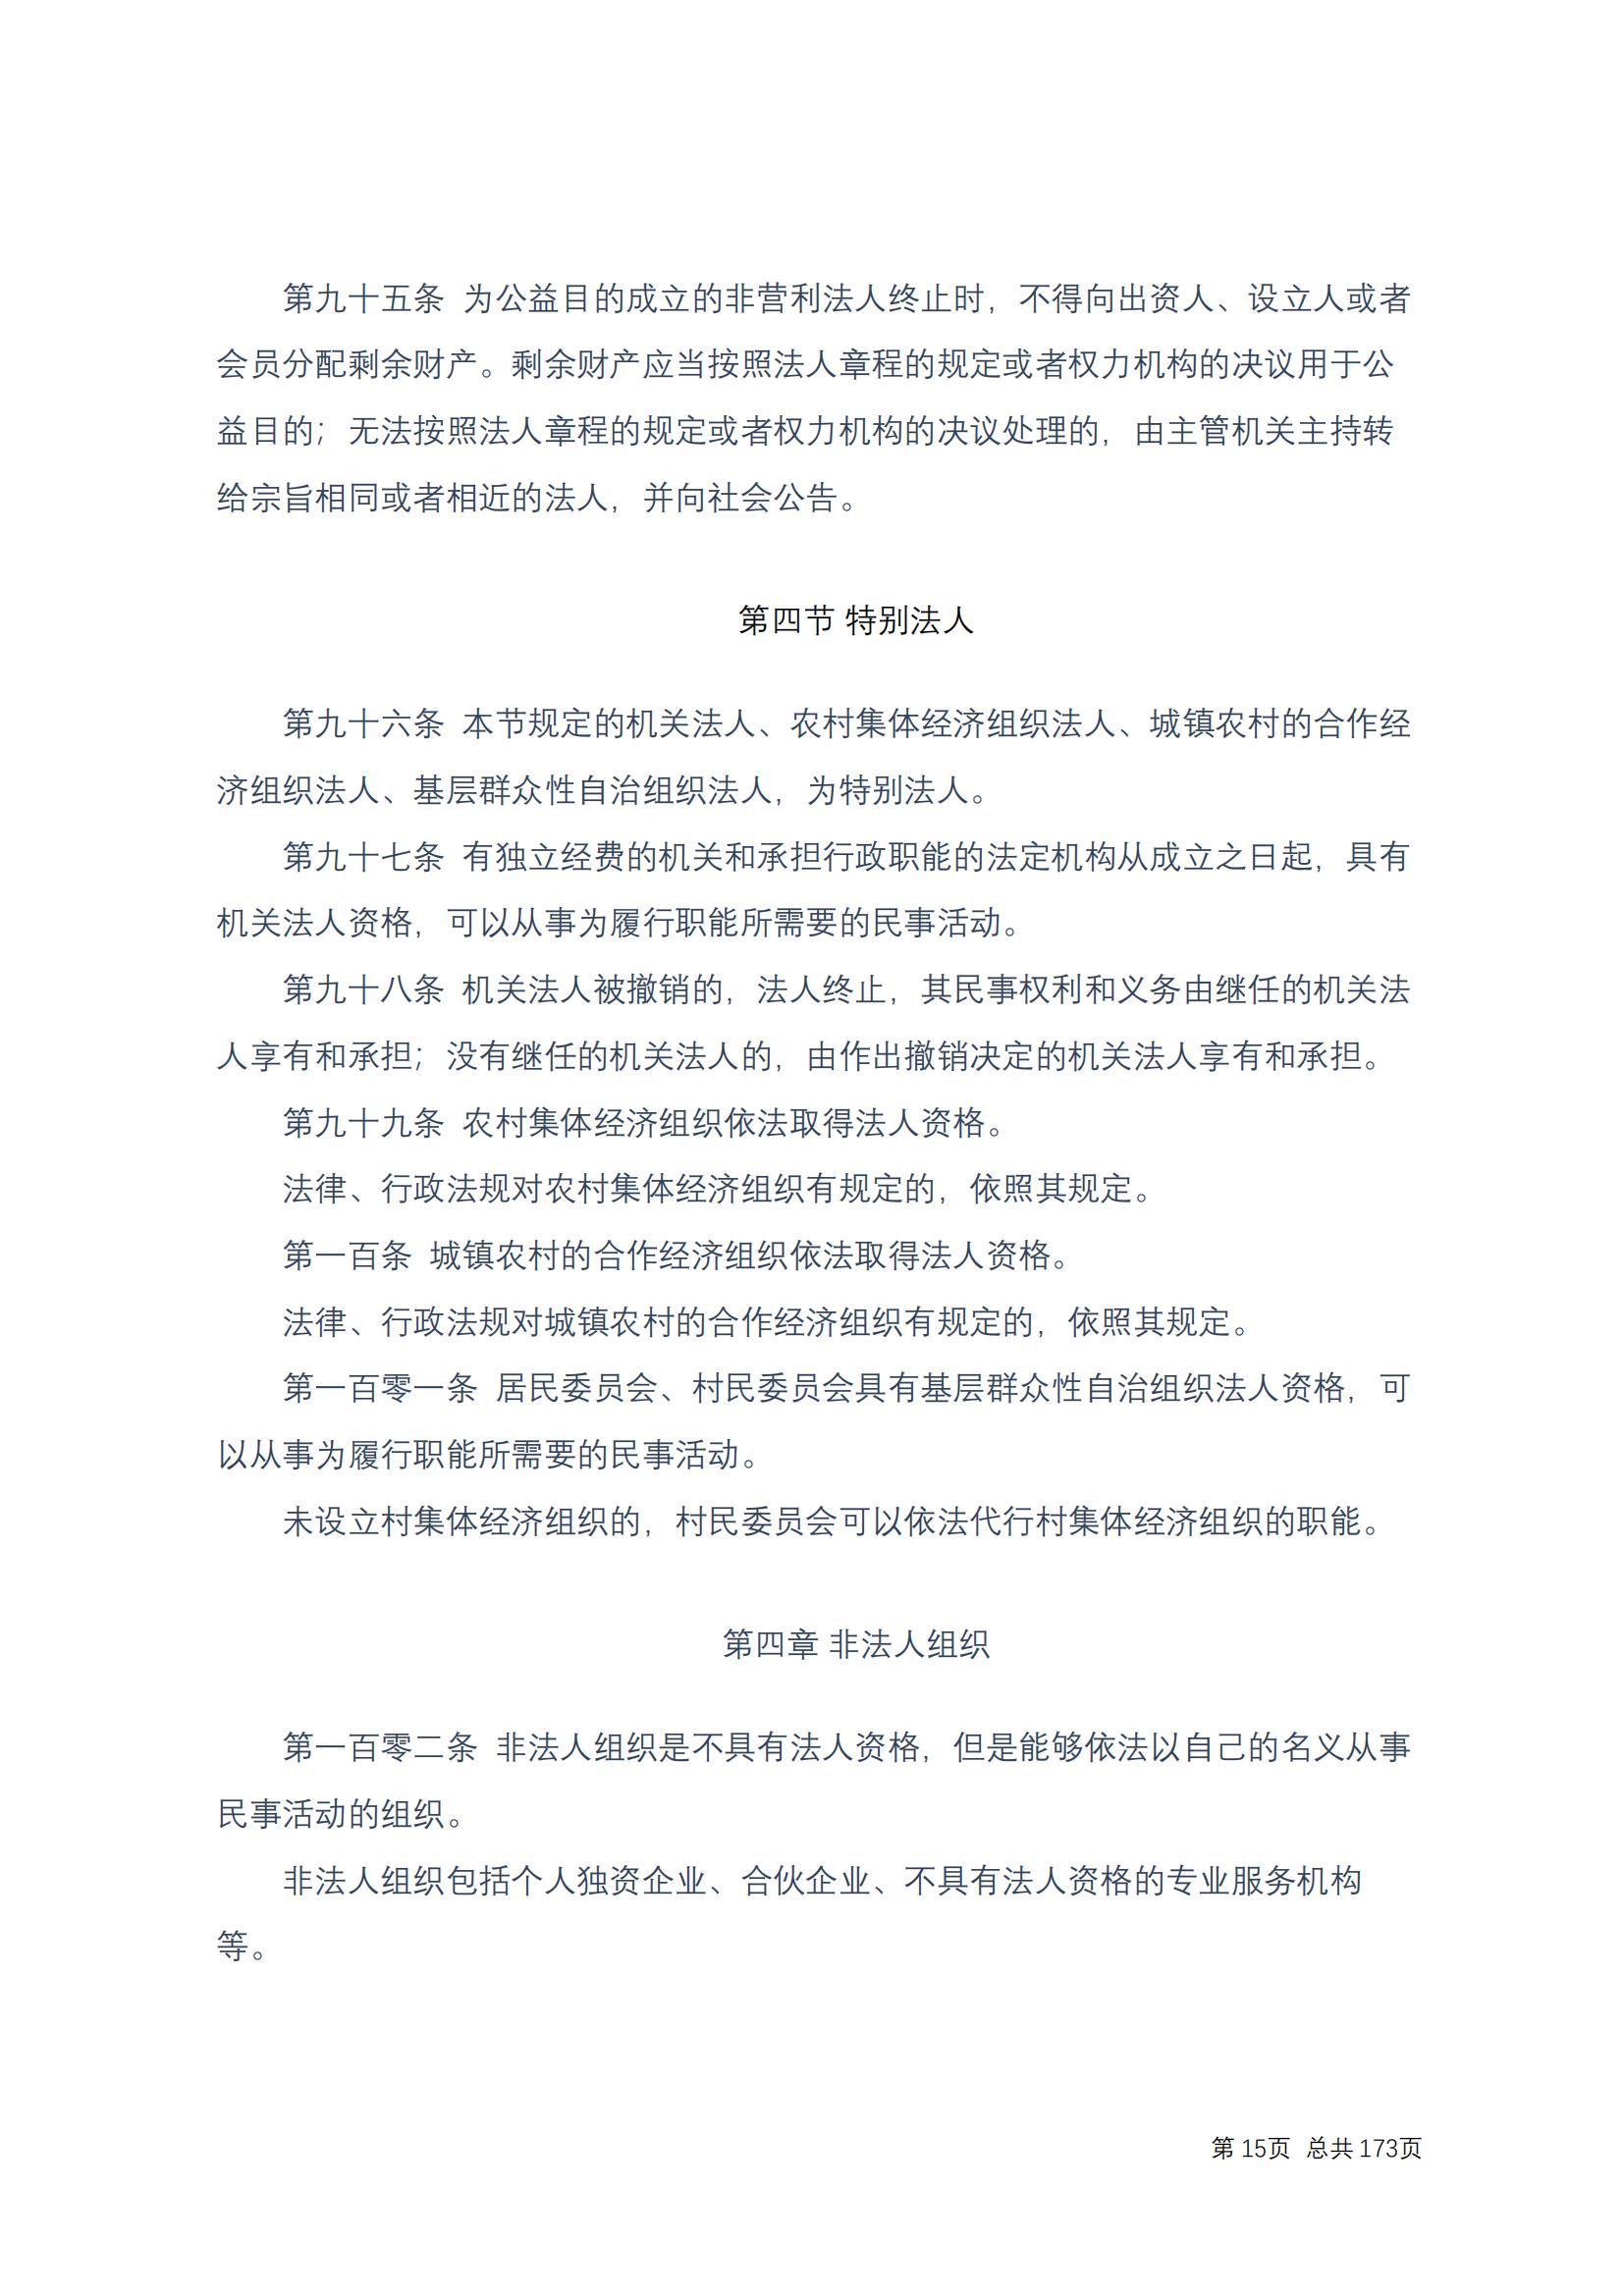 中华人民共和国民法典 修改过_14